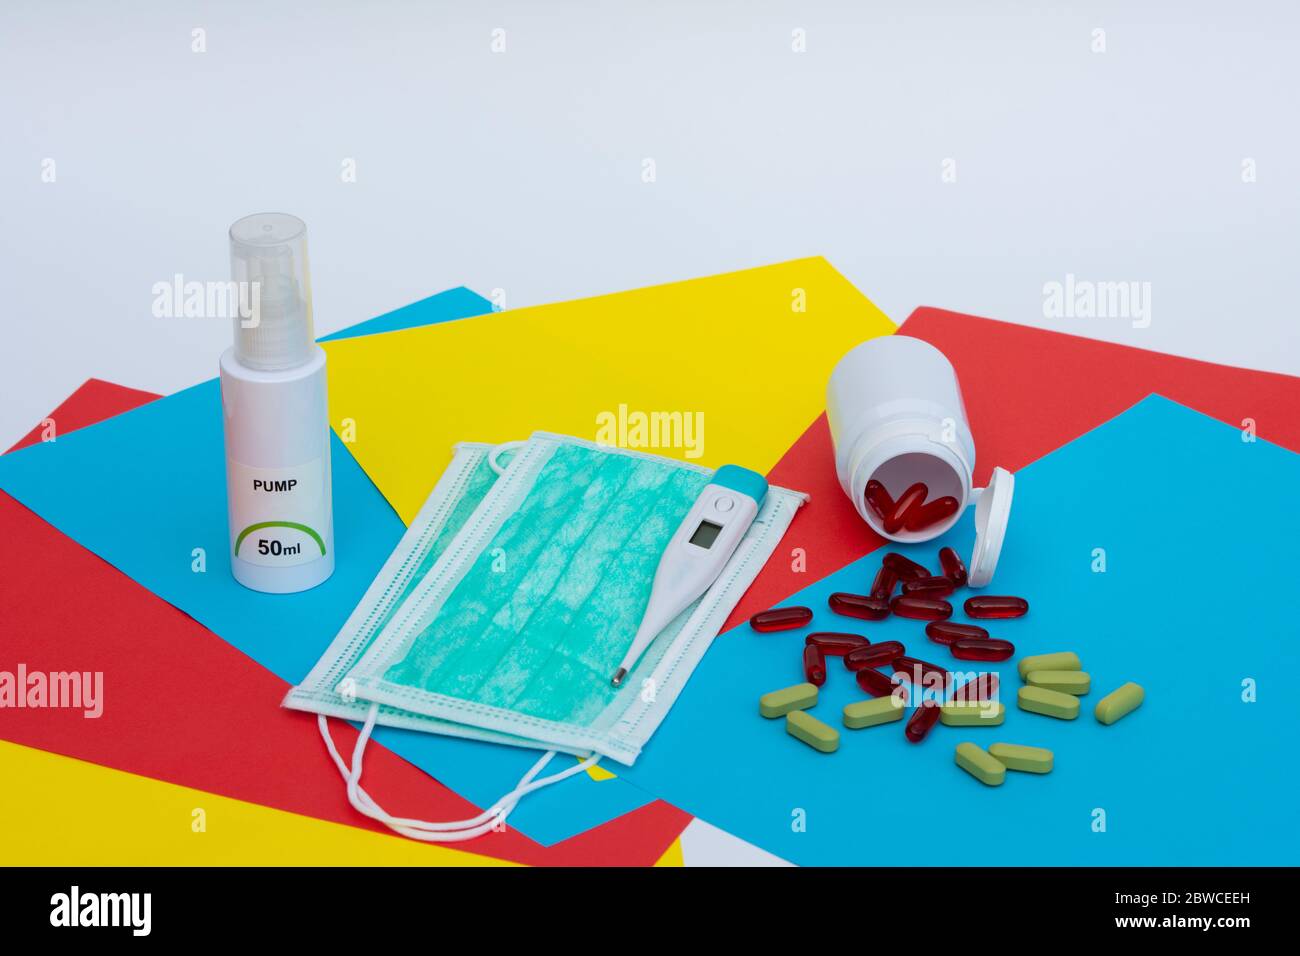 Gel désinfectant pour les mains, masque chirurgical, thermomètre électronique numérique et pilules sur fond multicolore. Banque D'Images